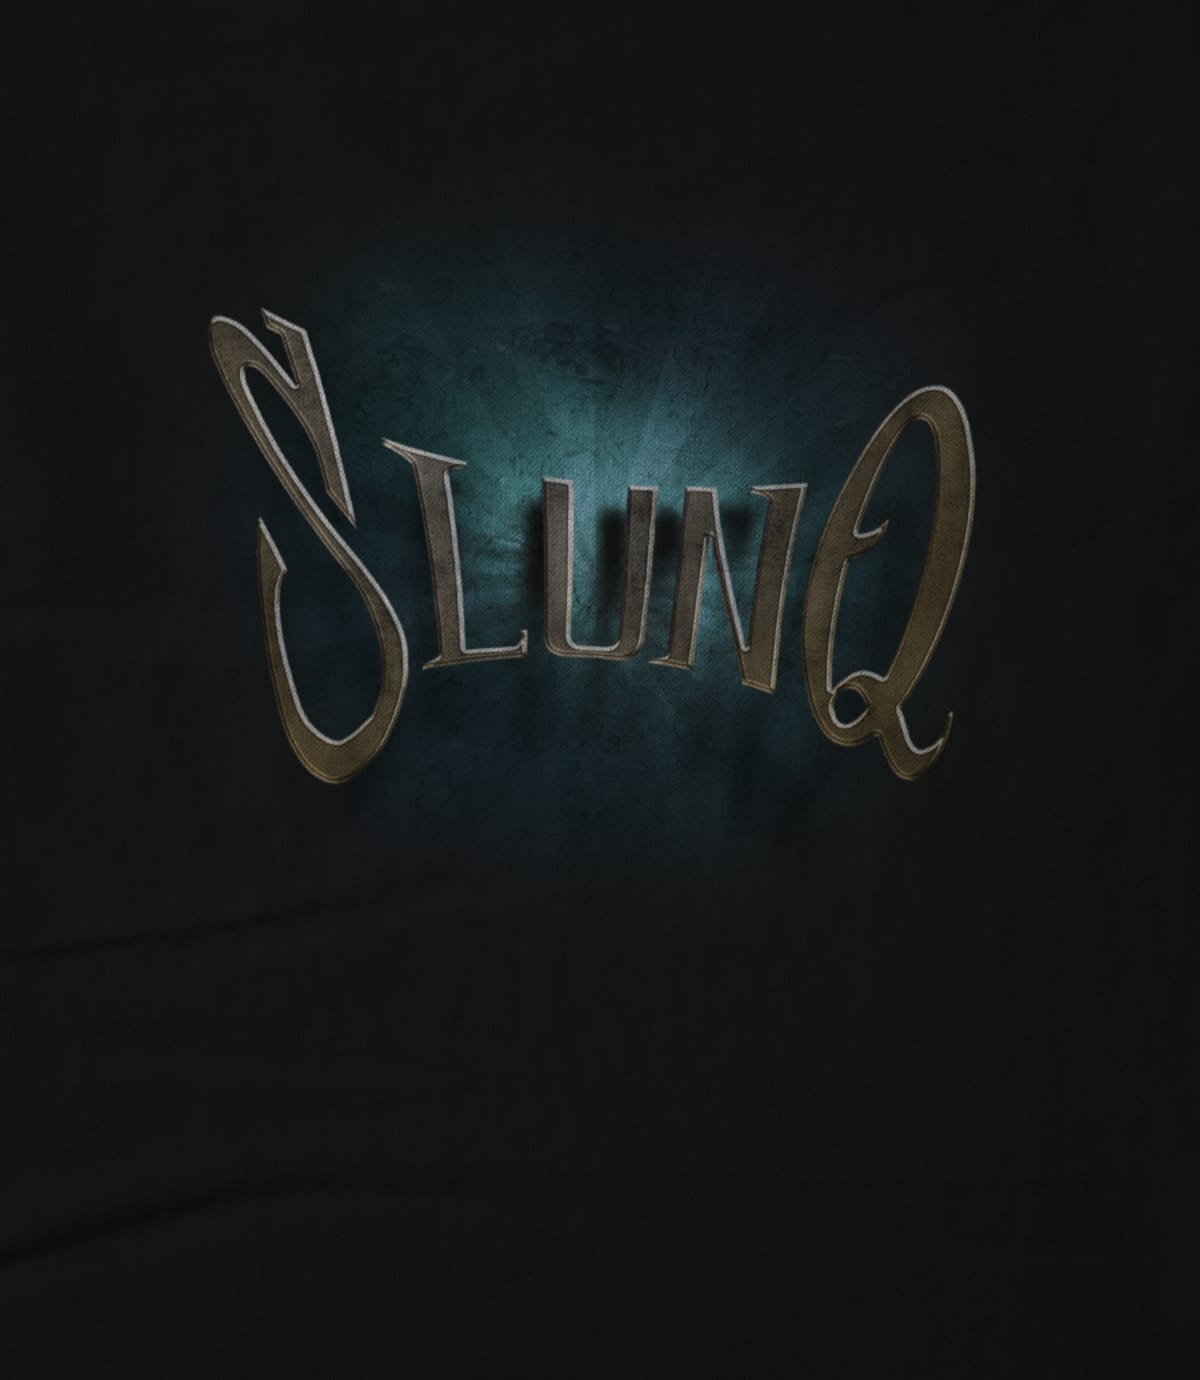 Slunq logo turquoise 1570411524